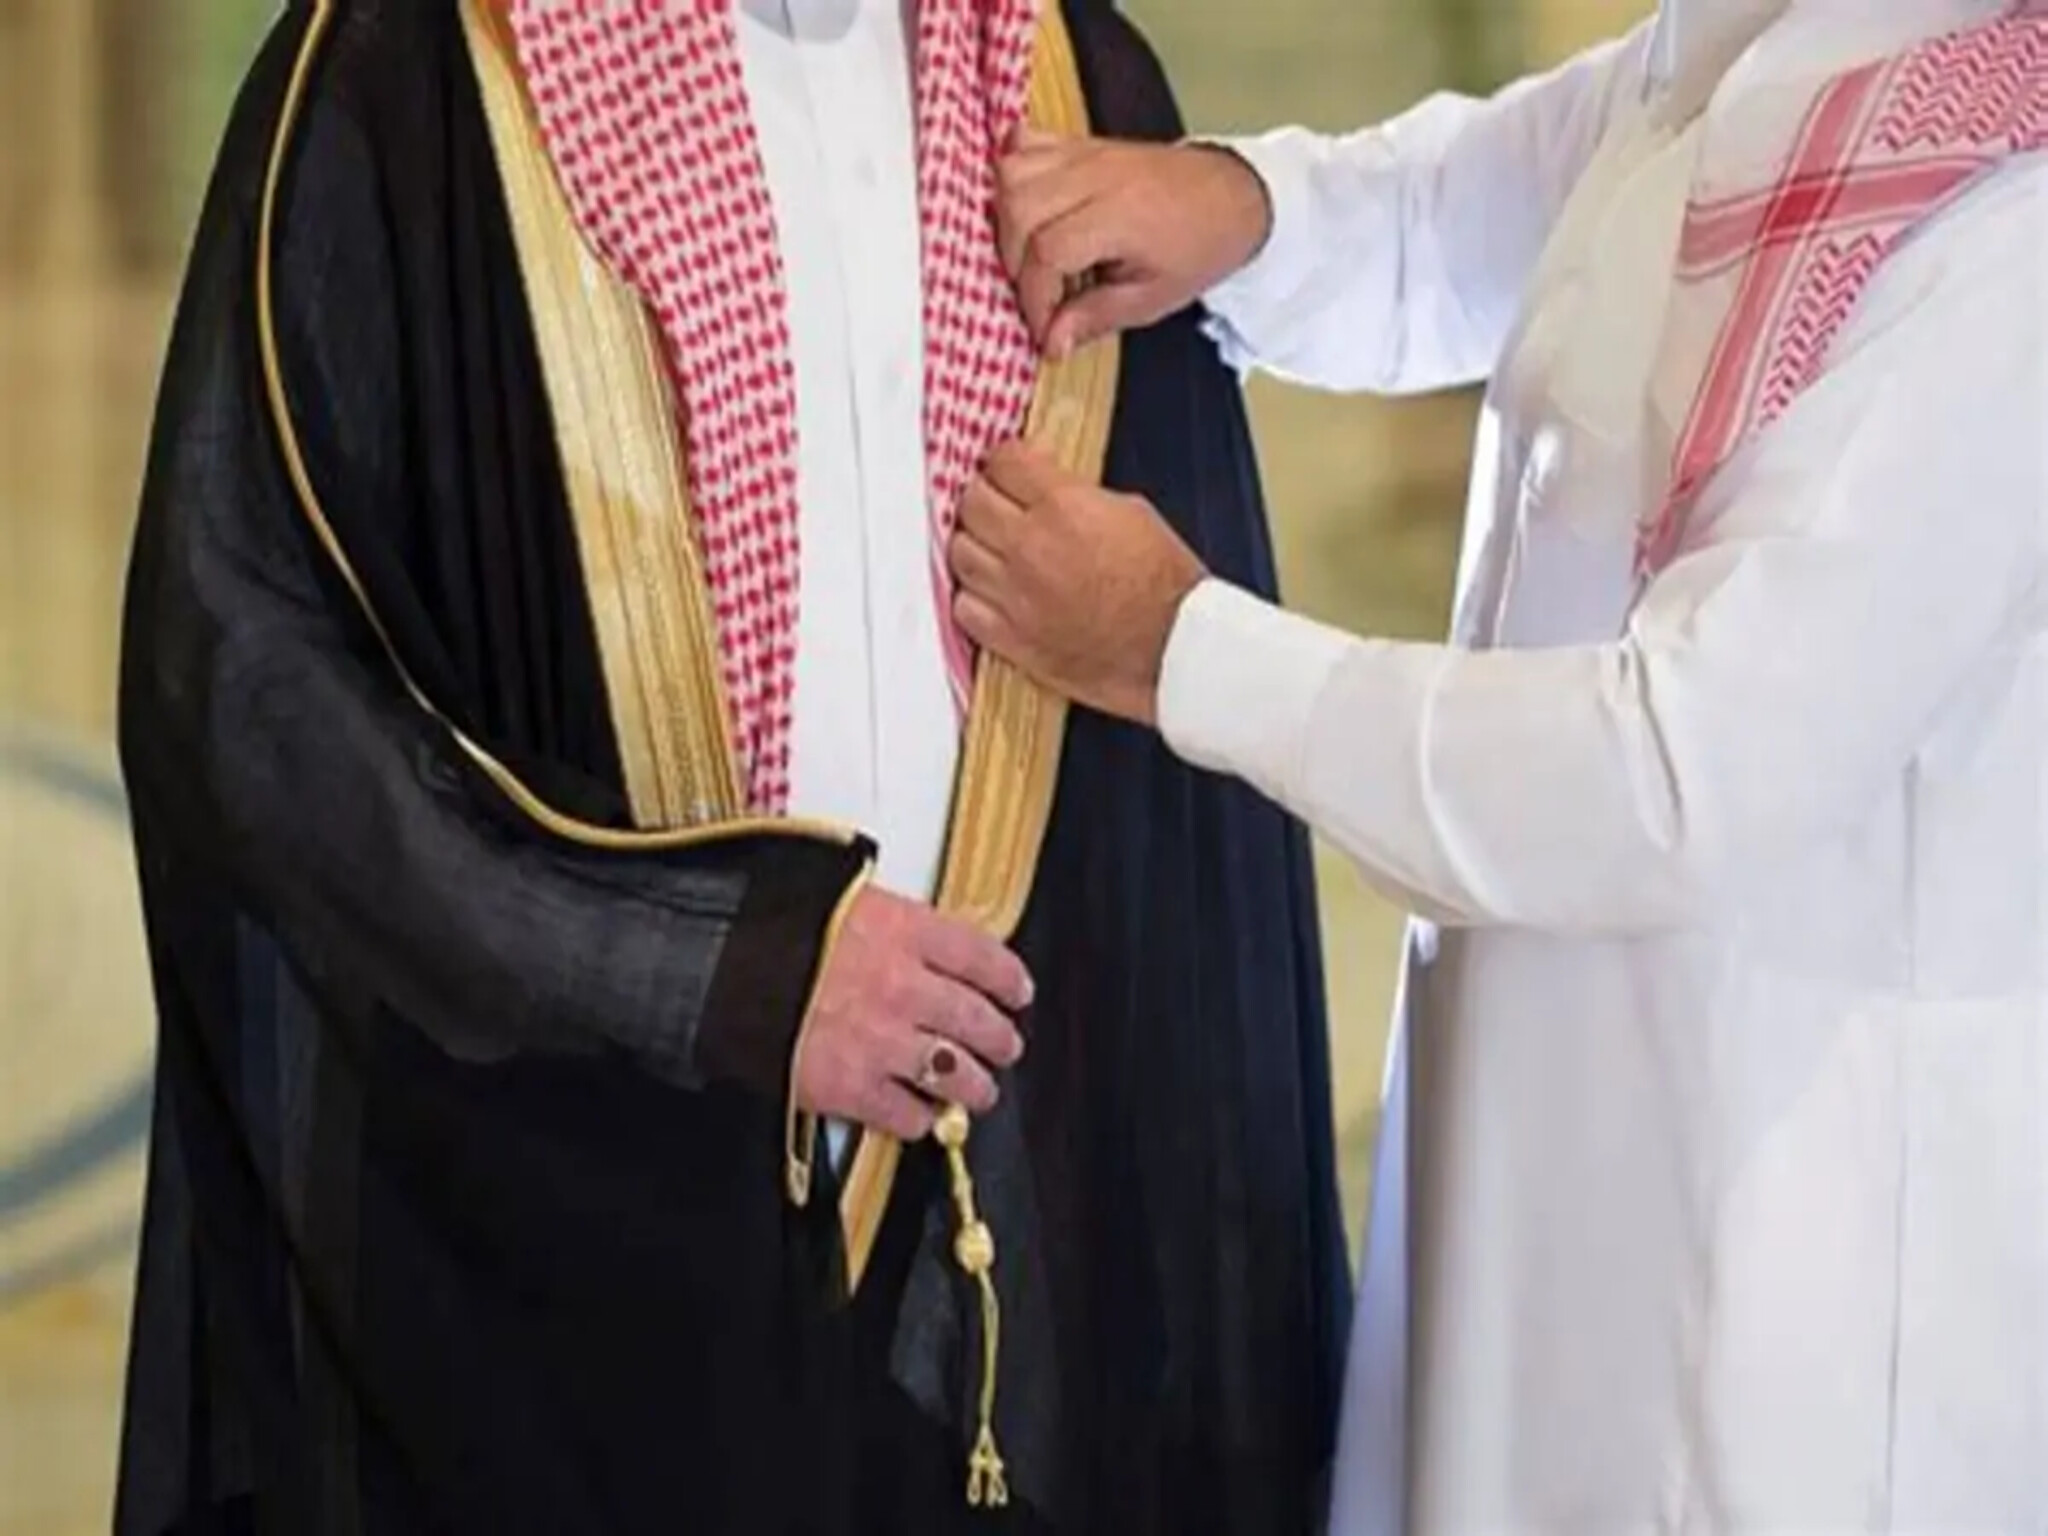 أمر ملكي يُلزم منسوبي الجِهات الحكومية السعودية بارتداء "الزي الوطني" داخل مقار العمل